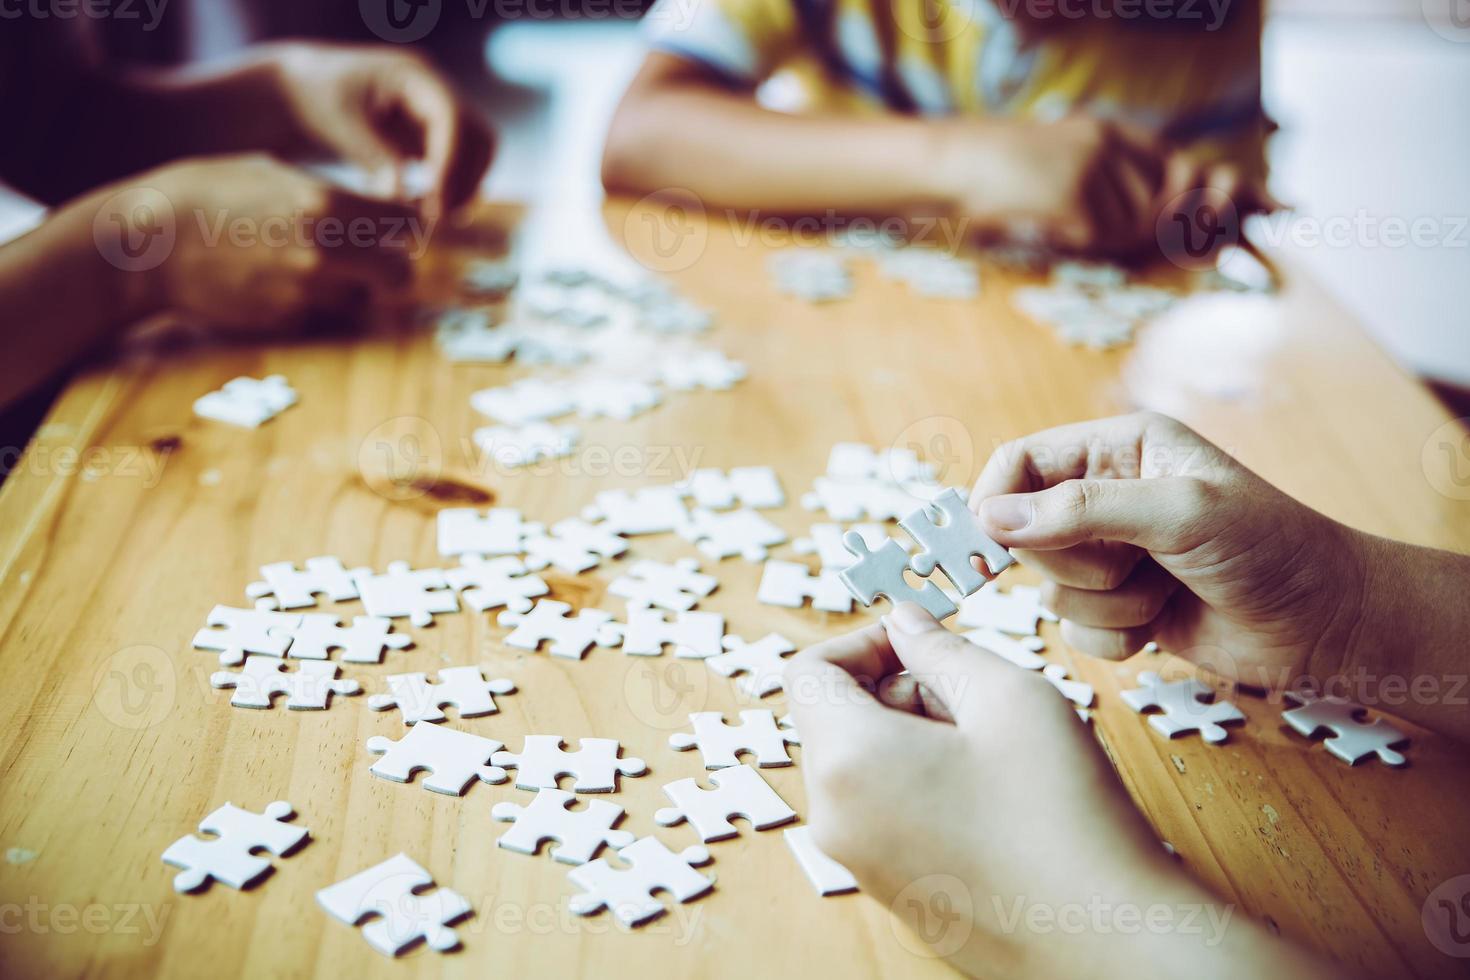 Hände einer Person, kleines Kind und Elternteil, die zu Hause zusammen auf einem Holztisch ein Puzzlespiel spielen, Konzept für die Freizeit mit der Familie, Spiel mit der Entwicklung, Bildung und Spaß der Kinder. foto